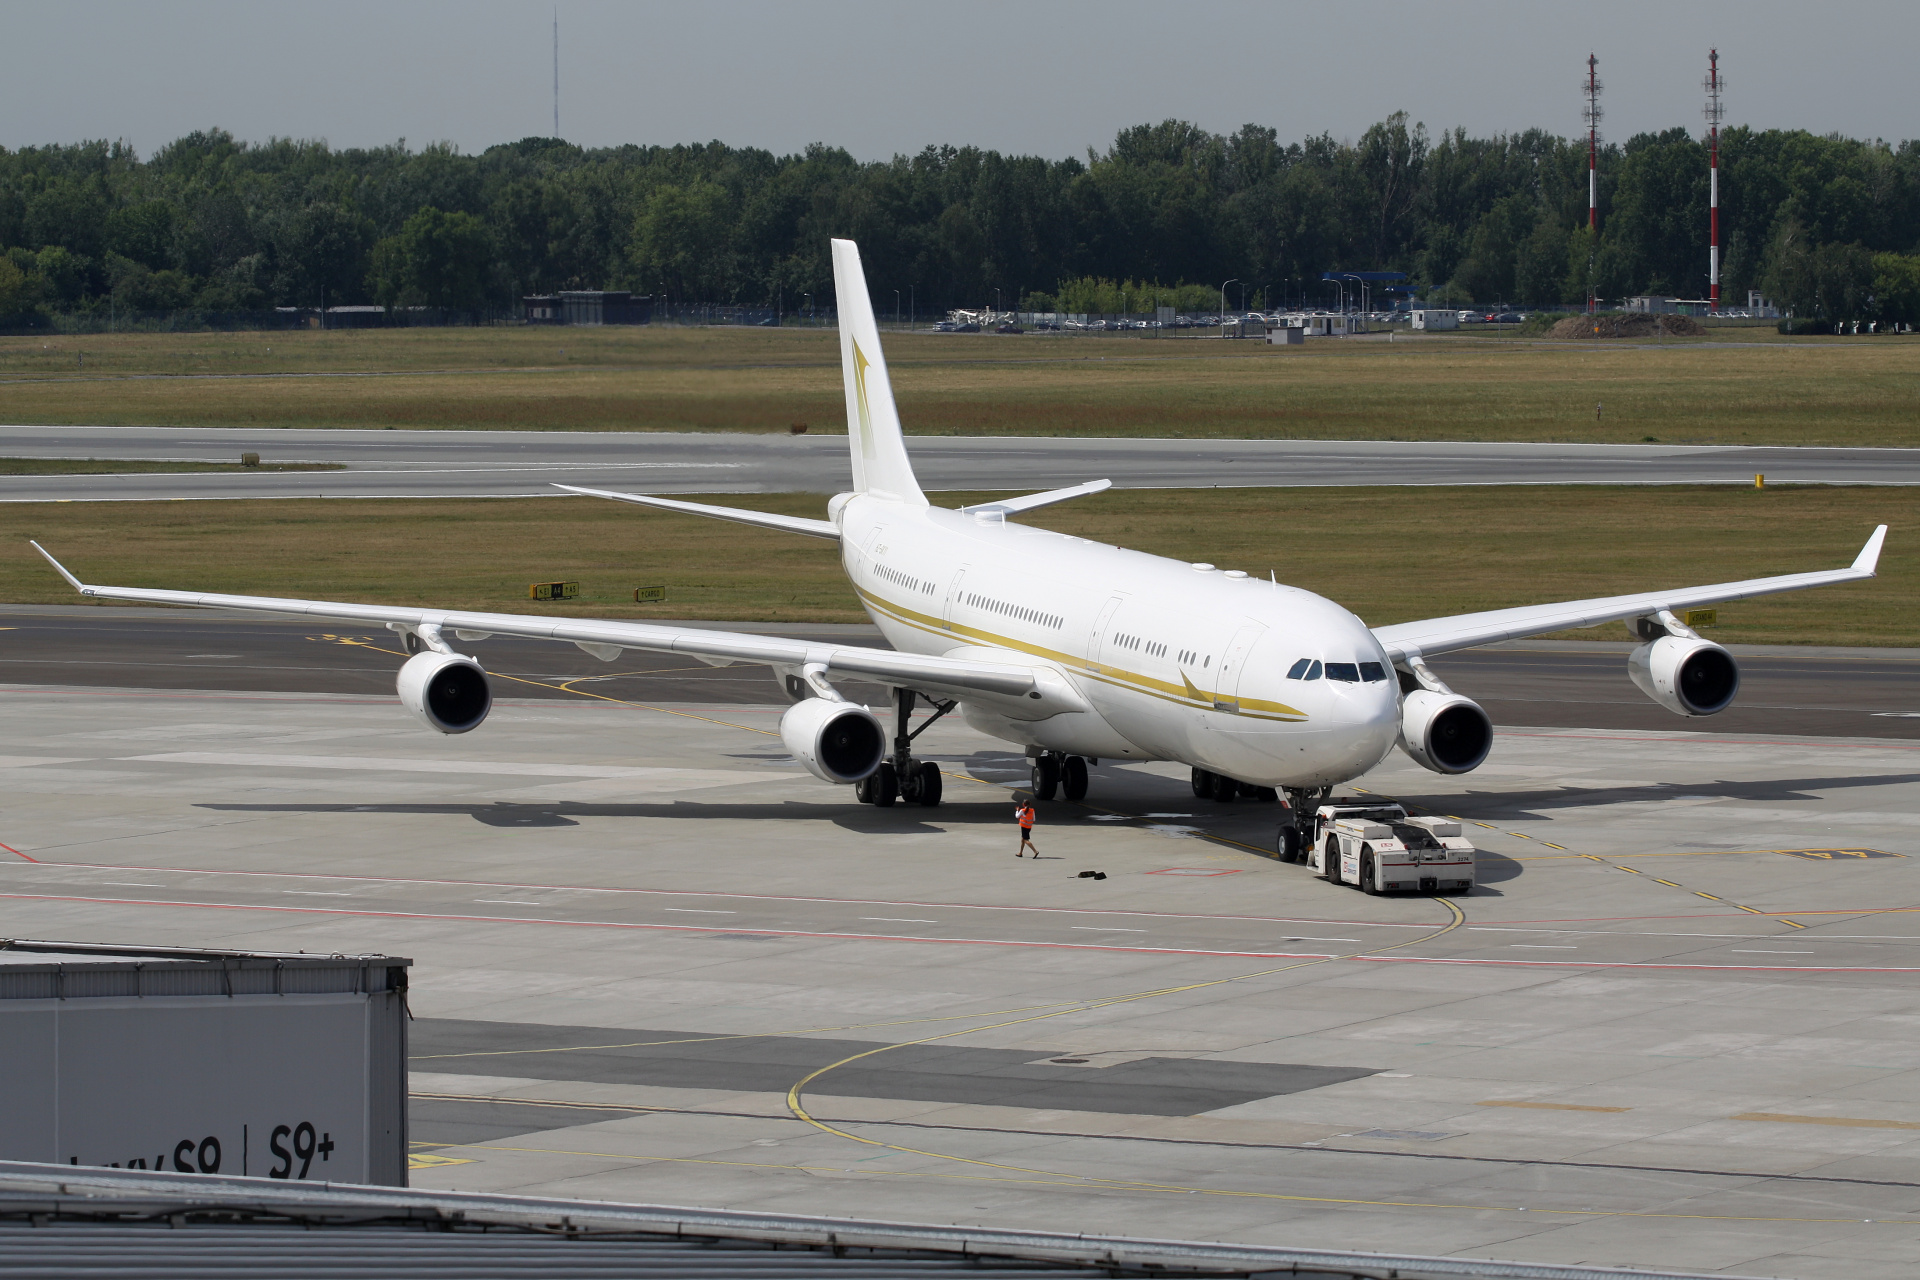 HZ-SKY1, Sky Prime Aviation Services (Samoloty » Spotting na EPWA » Airbus A340-200)